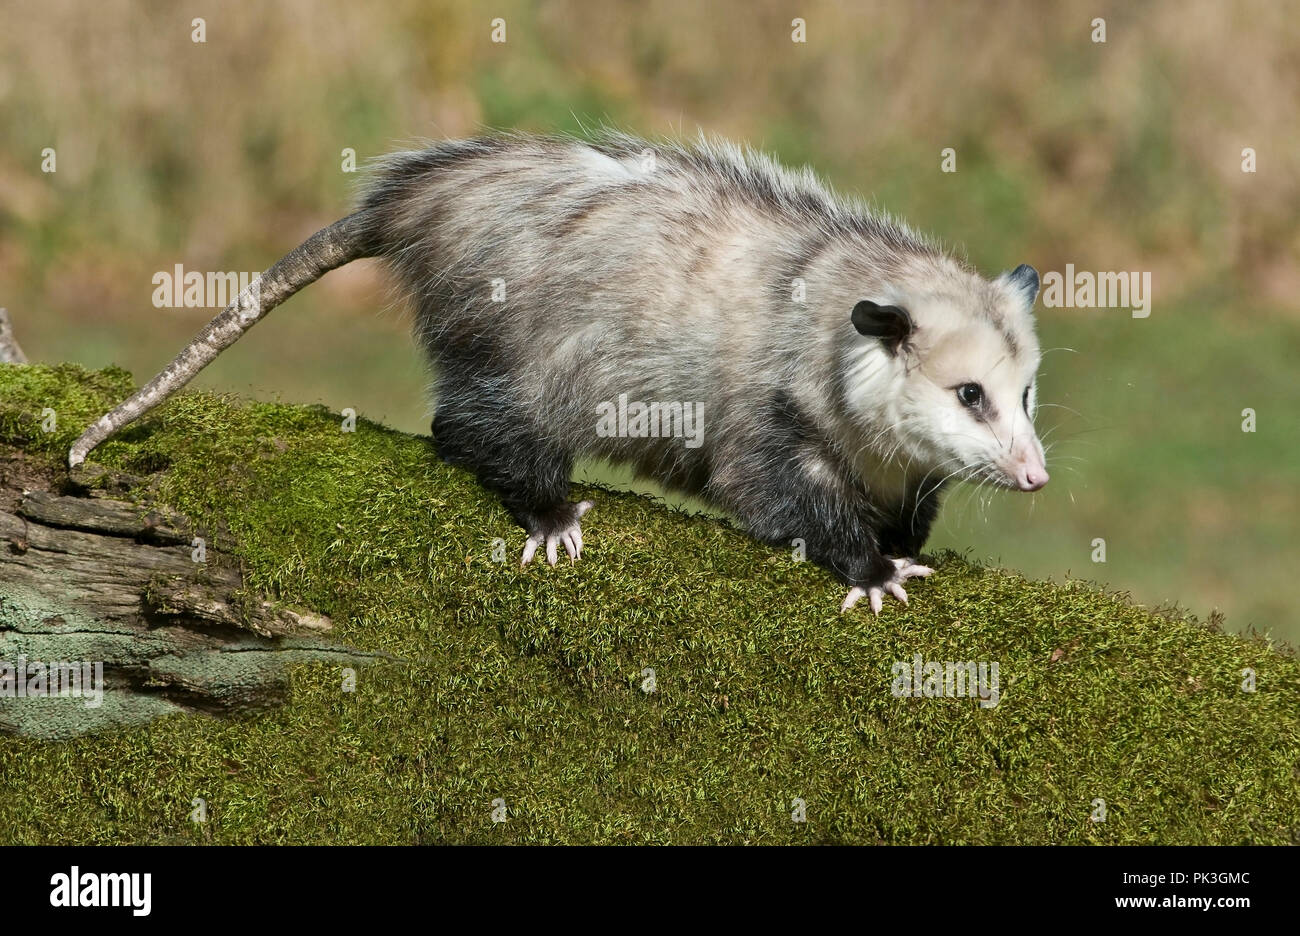 L'Opossum de Virginie (Didelphis virginiana), E Amérique du Nord, par aller Moody/Dembinsky Assoc Photo Banque D'Images